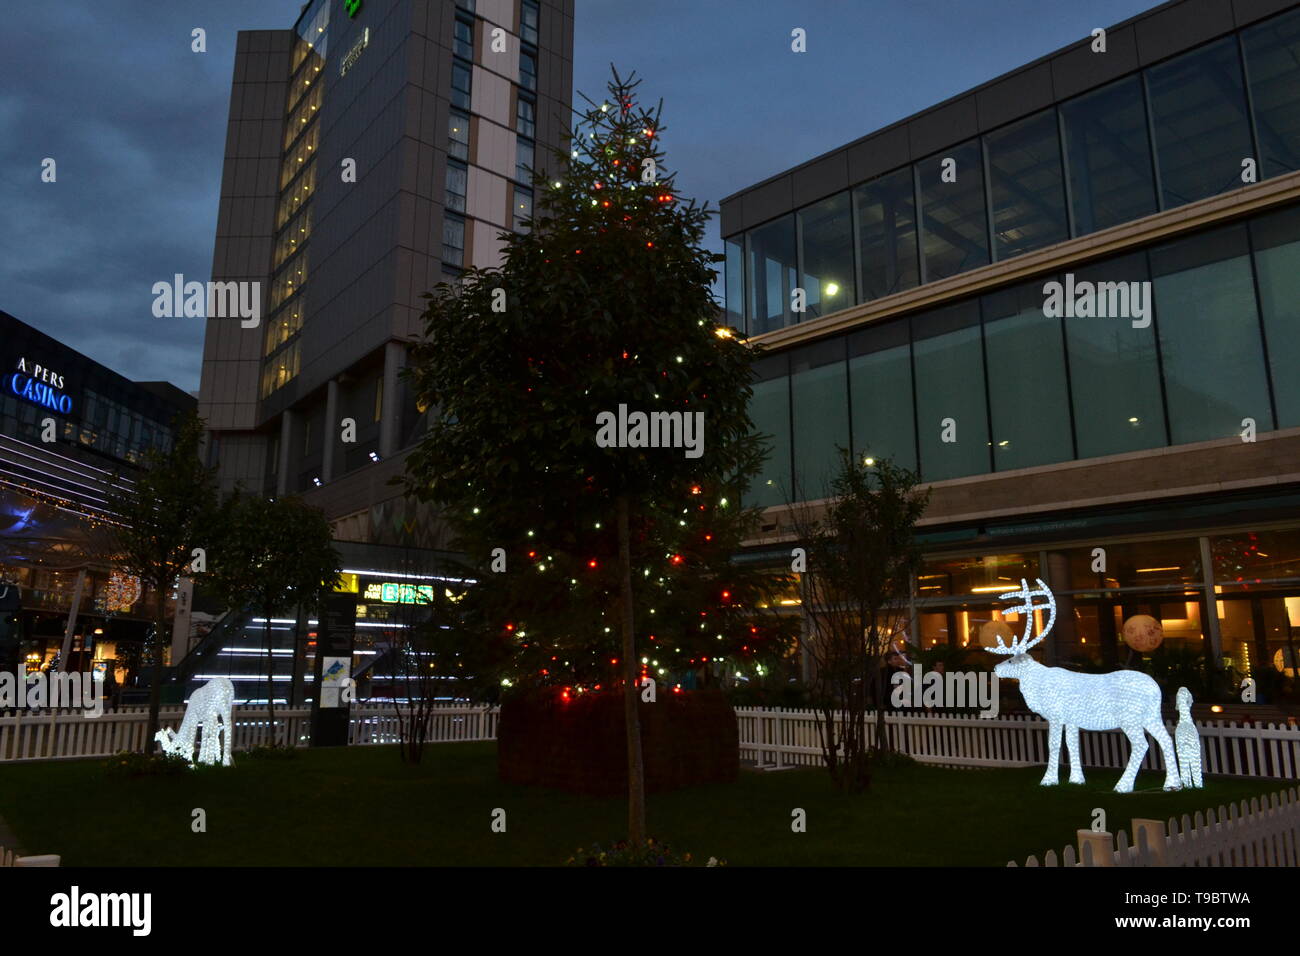 London/Großbritannien - 15. Dezember 2014: phosphoreszierende Hirsche gehen um Weihnachtsbaum in Westfield Stratford City Shopping Center installiert. Stockfoto